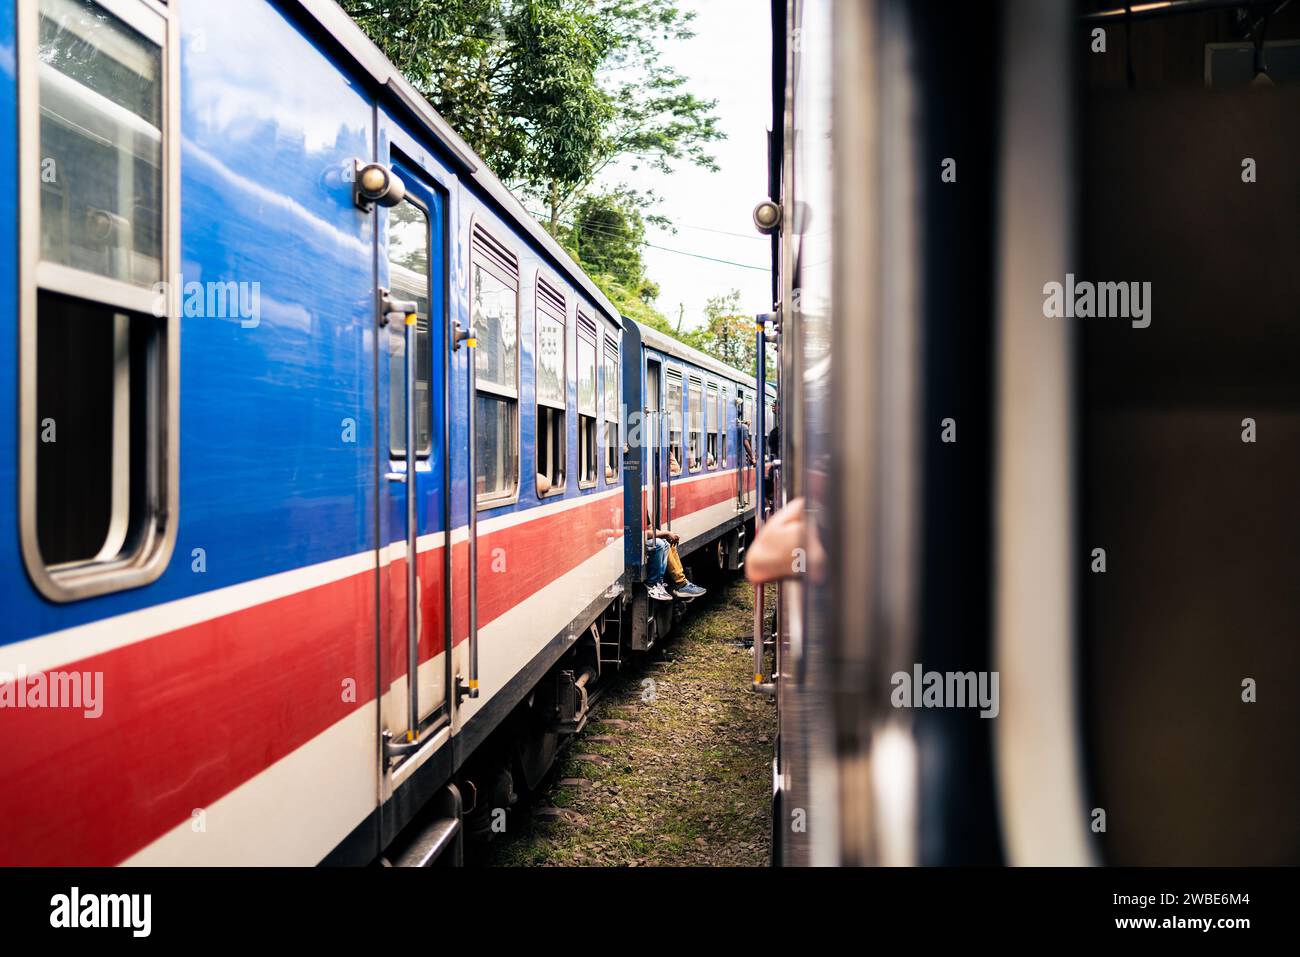 Zwei Züge in Sri Lanka warten am Bahnhof. Eisenbahnreisen und Eisenbahntourismus. Alte farbenfrohe blaue und rote Tracht. Eisenbahn in Ceylon. Stockfoto